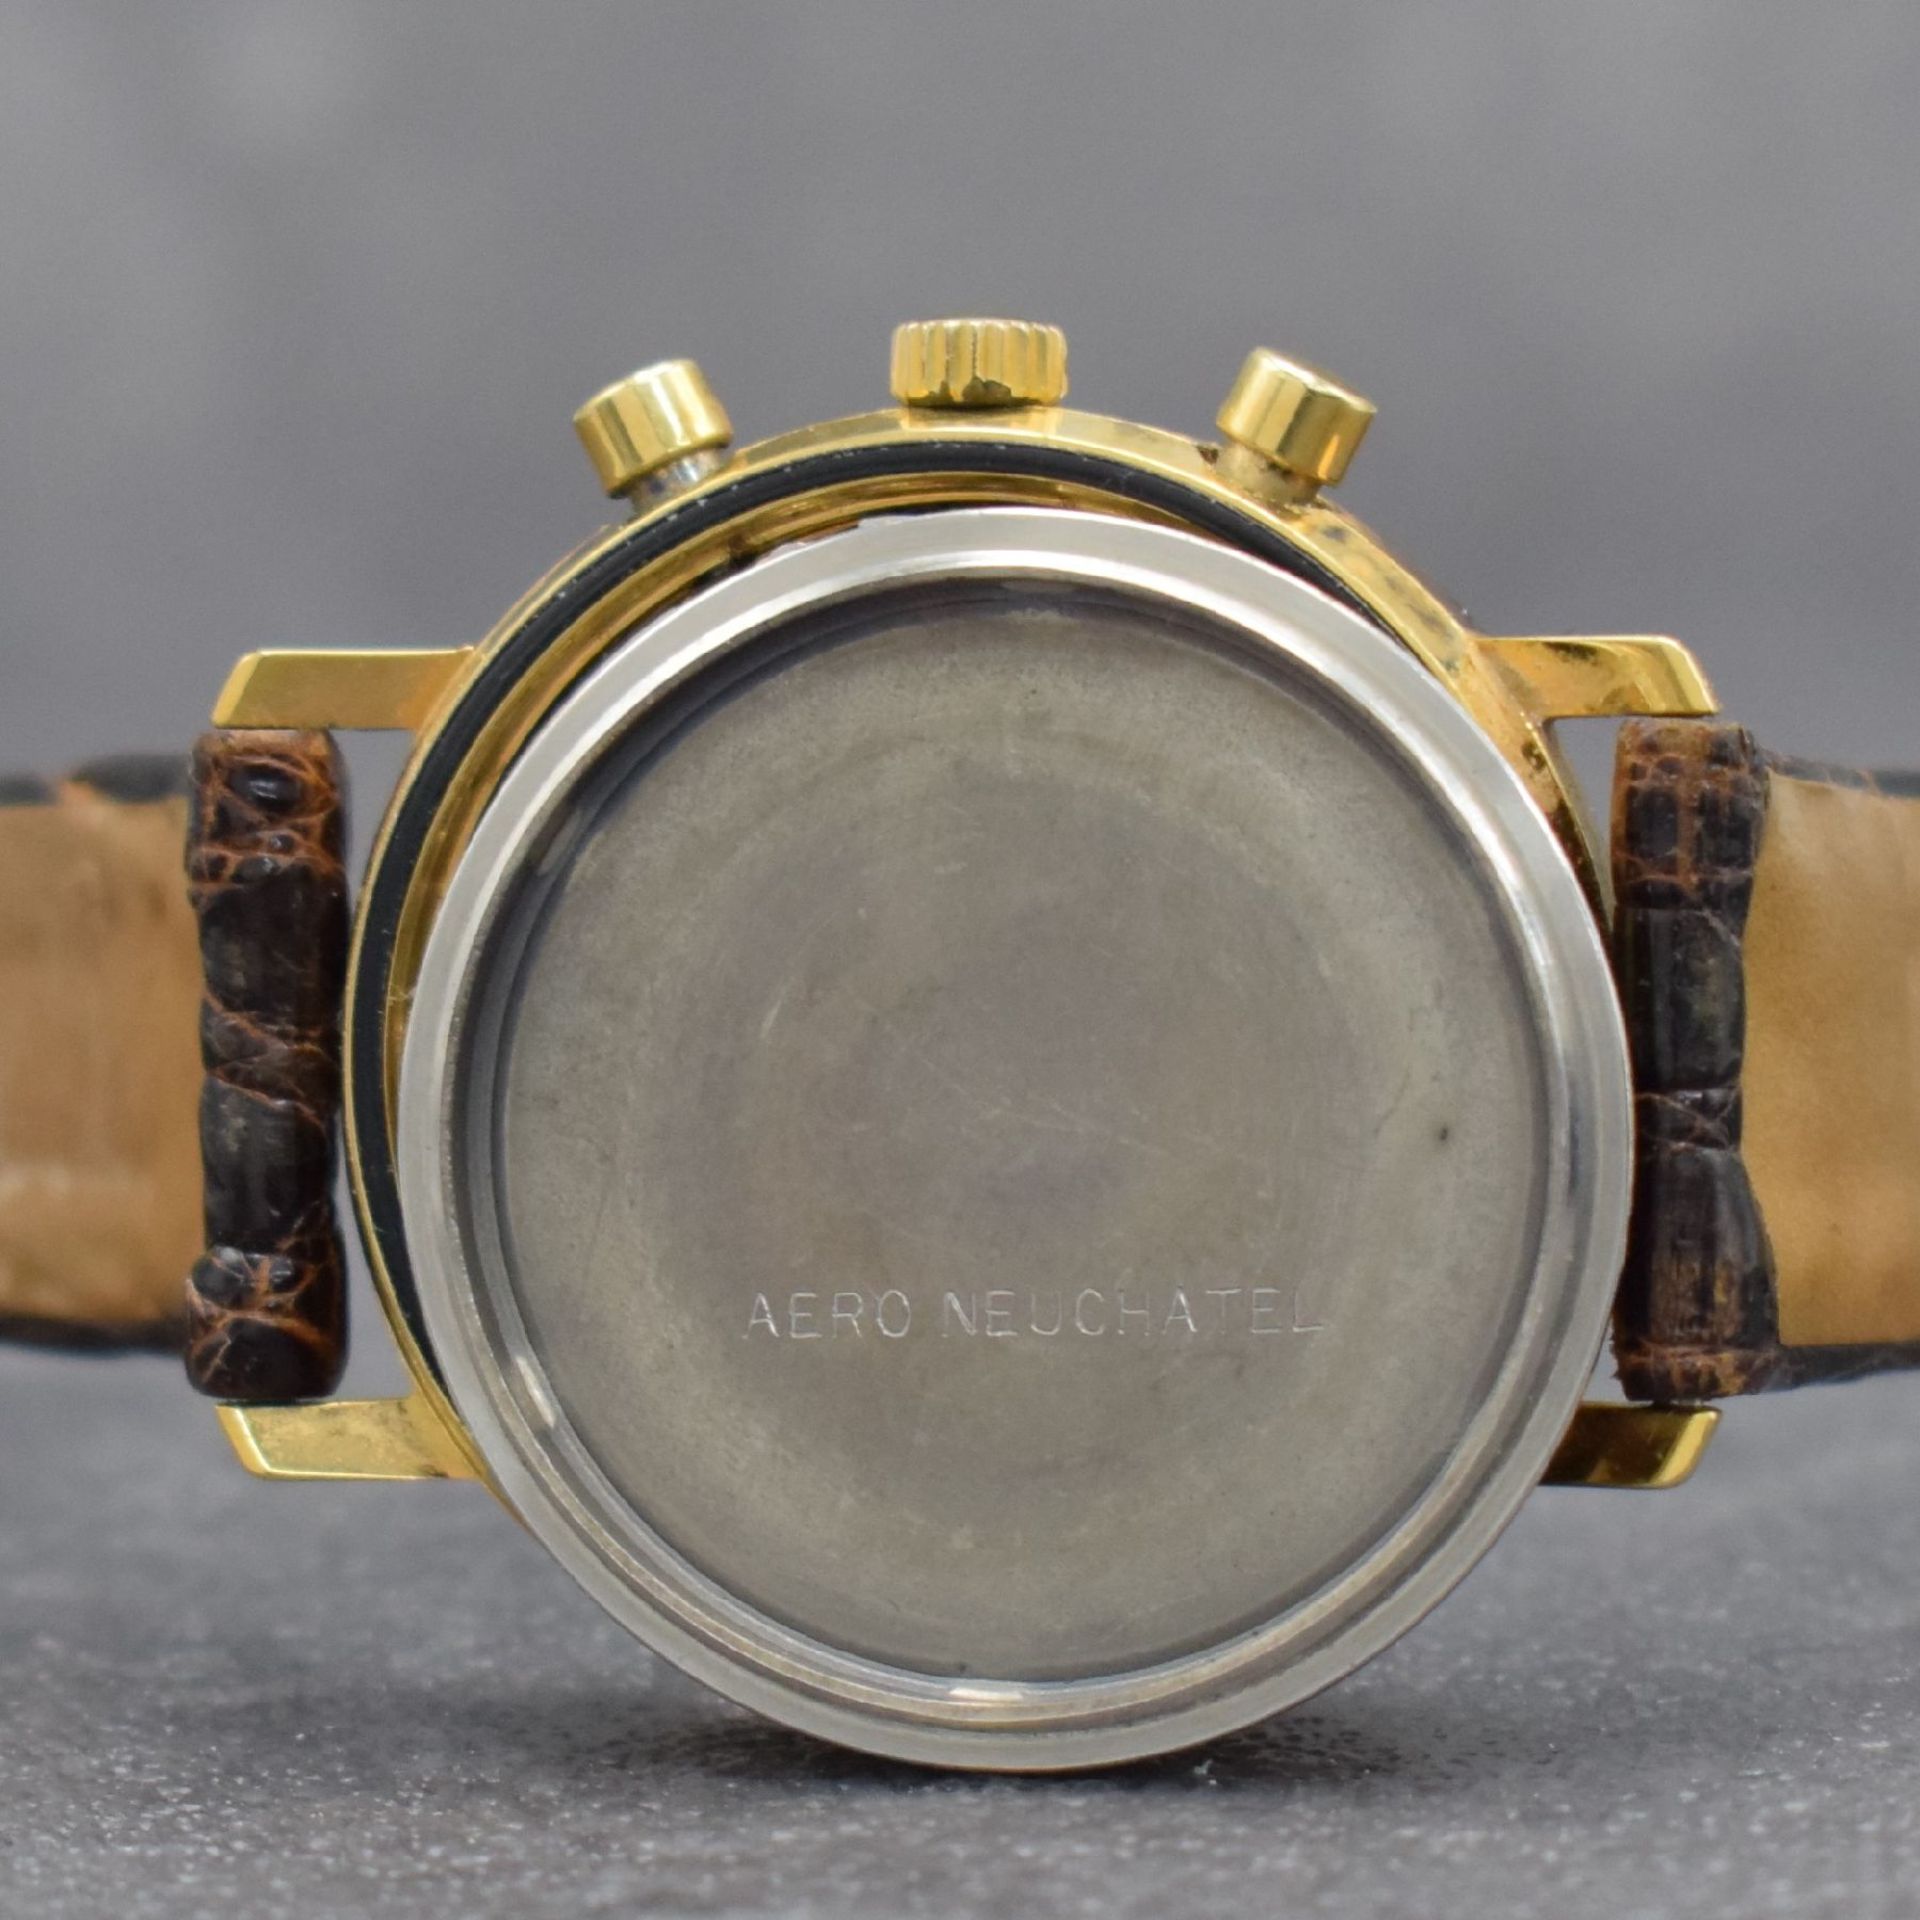 AERO WATCH vergoldeter Herrenchronograph mit Mondphase, - Bild 9 aus 9